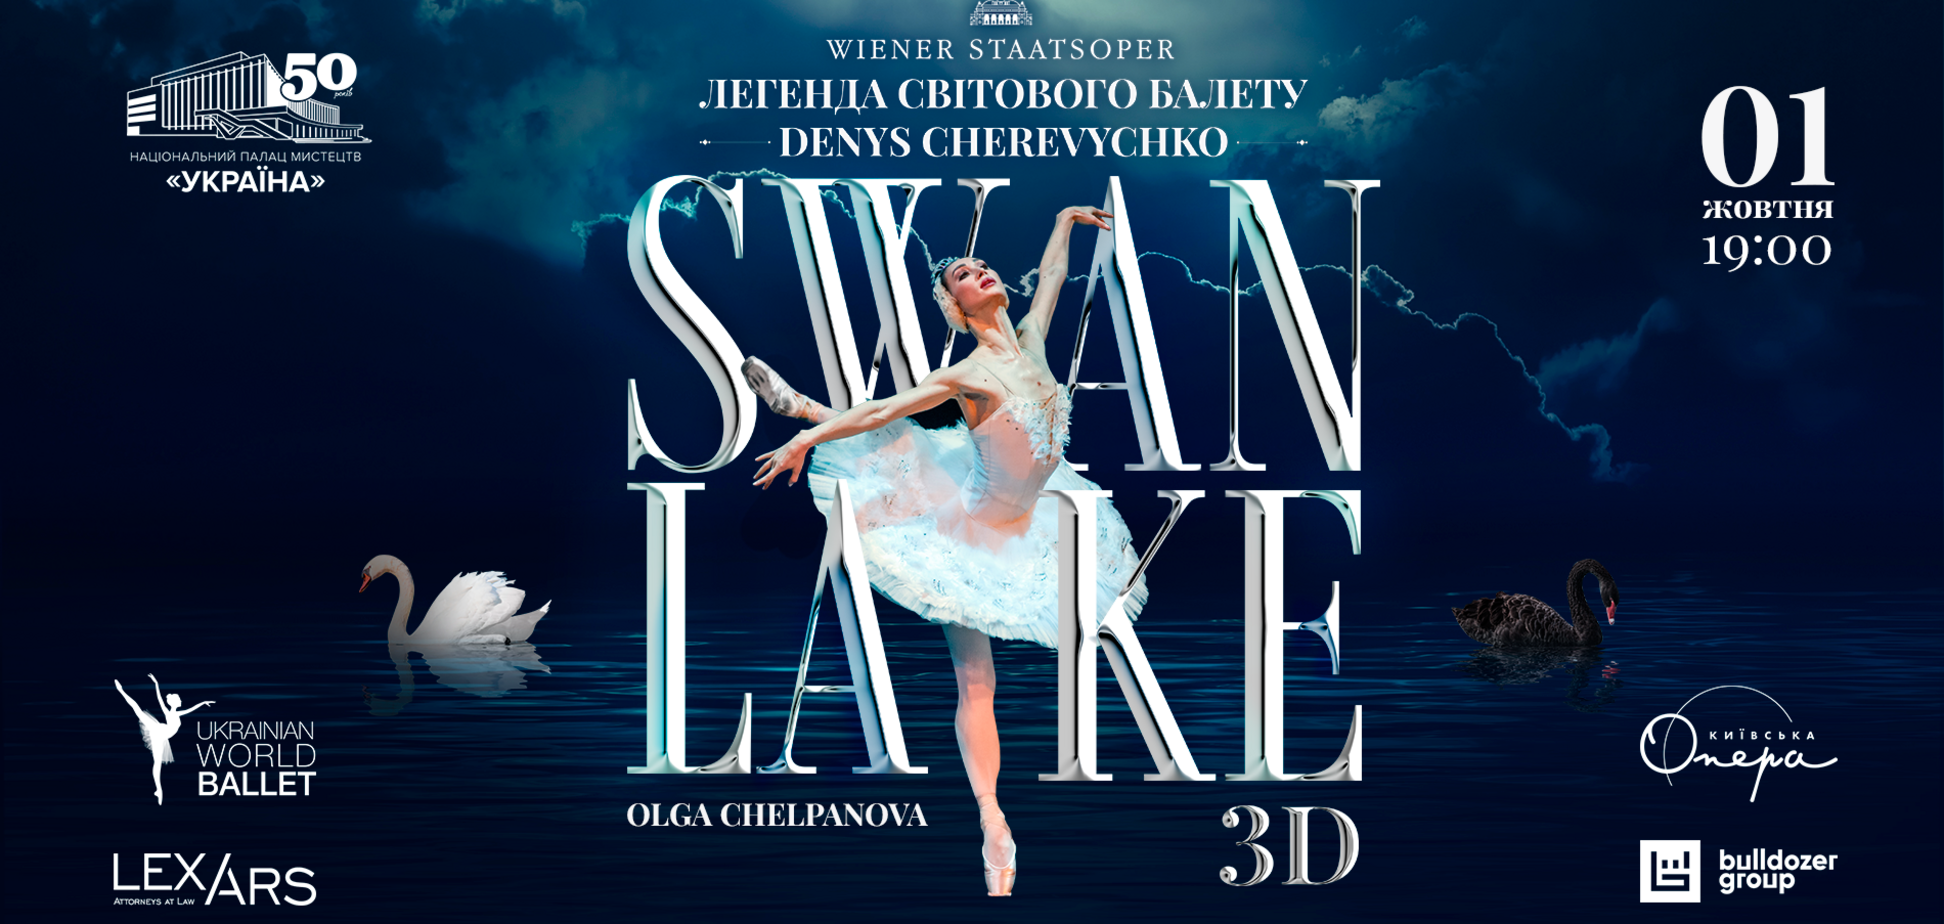 UKRAINIAN WORLD BALLET знову представить всесвітньо відомий балет 'Лебедине озеро' 3D